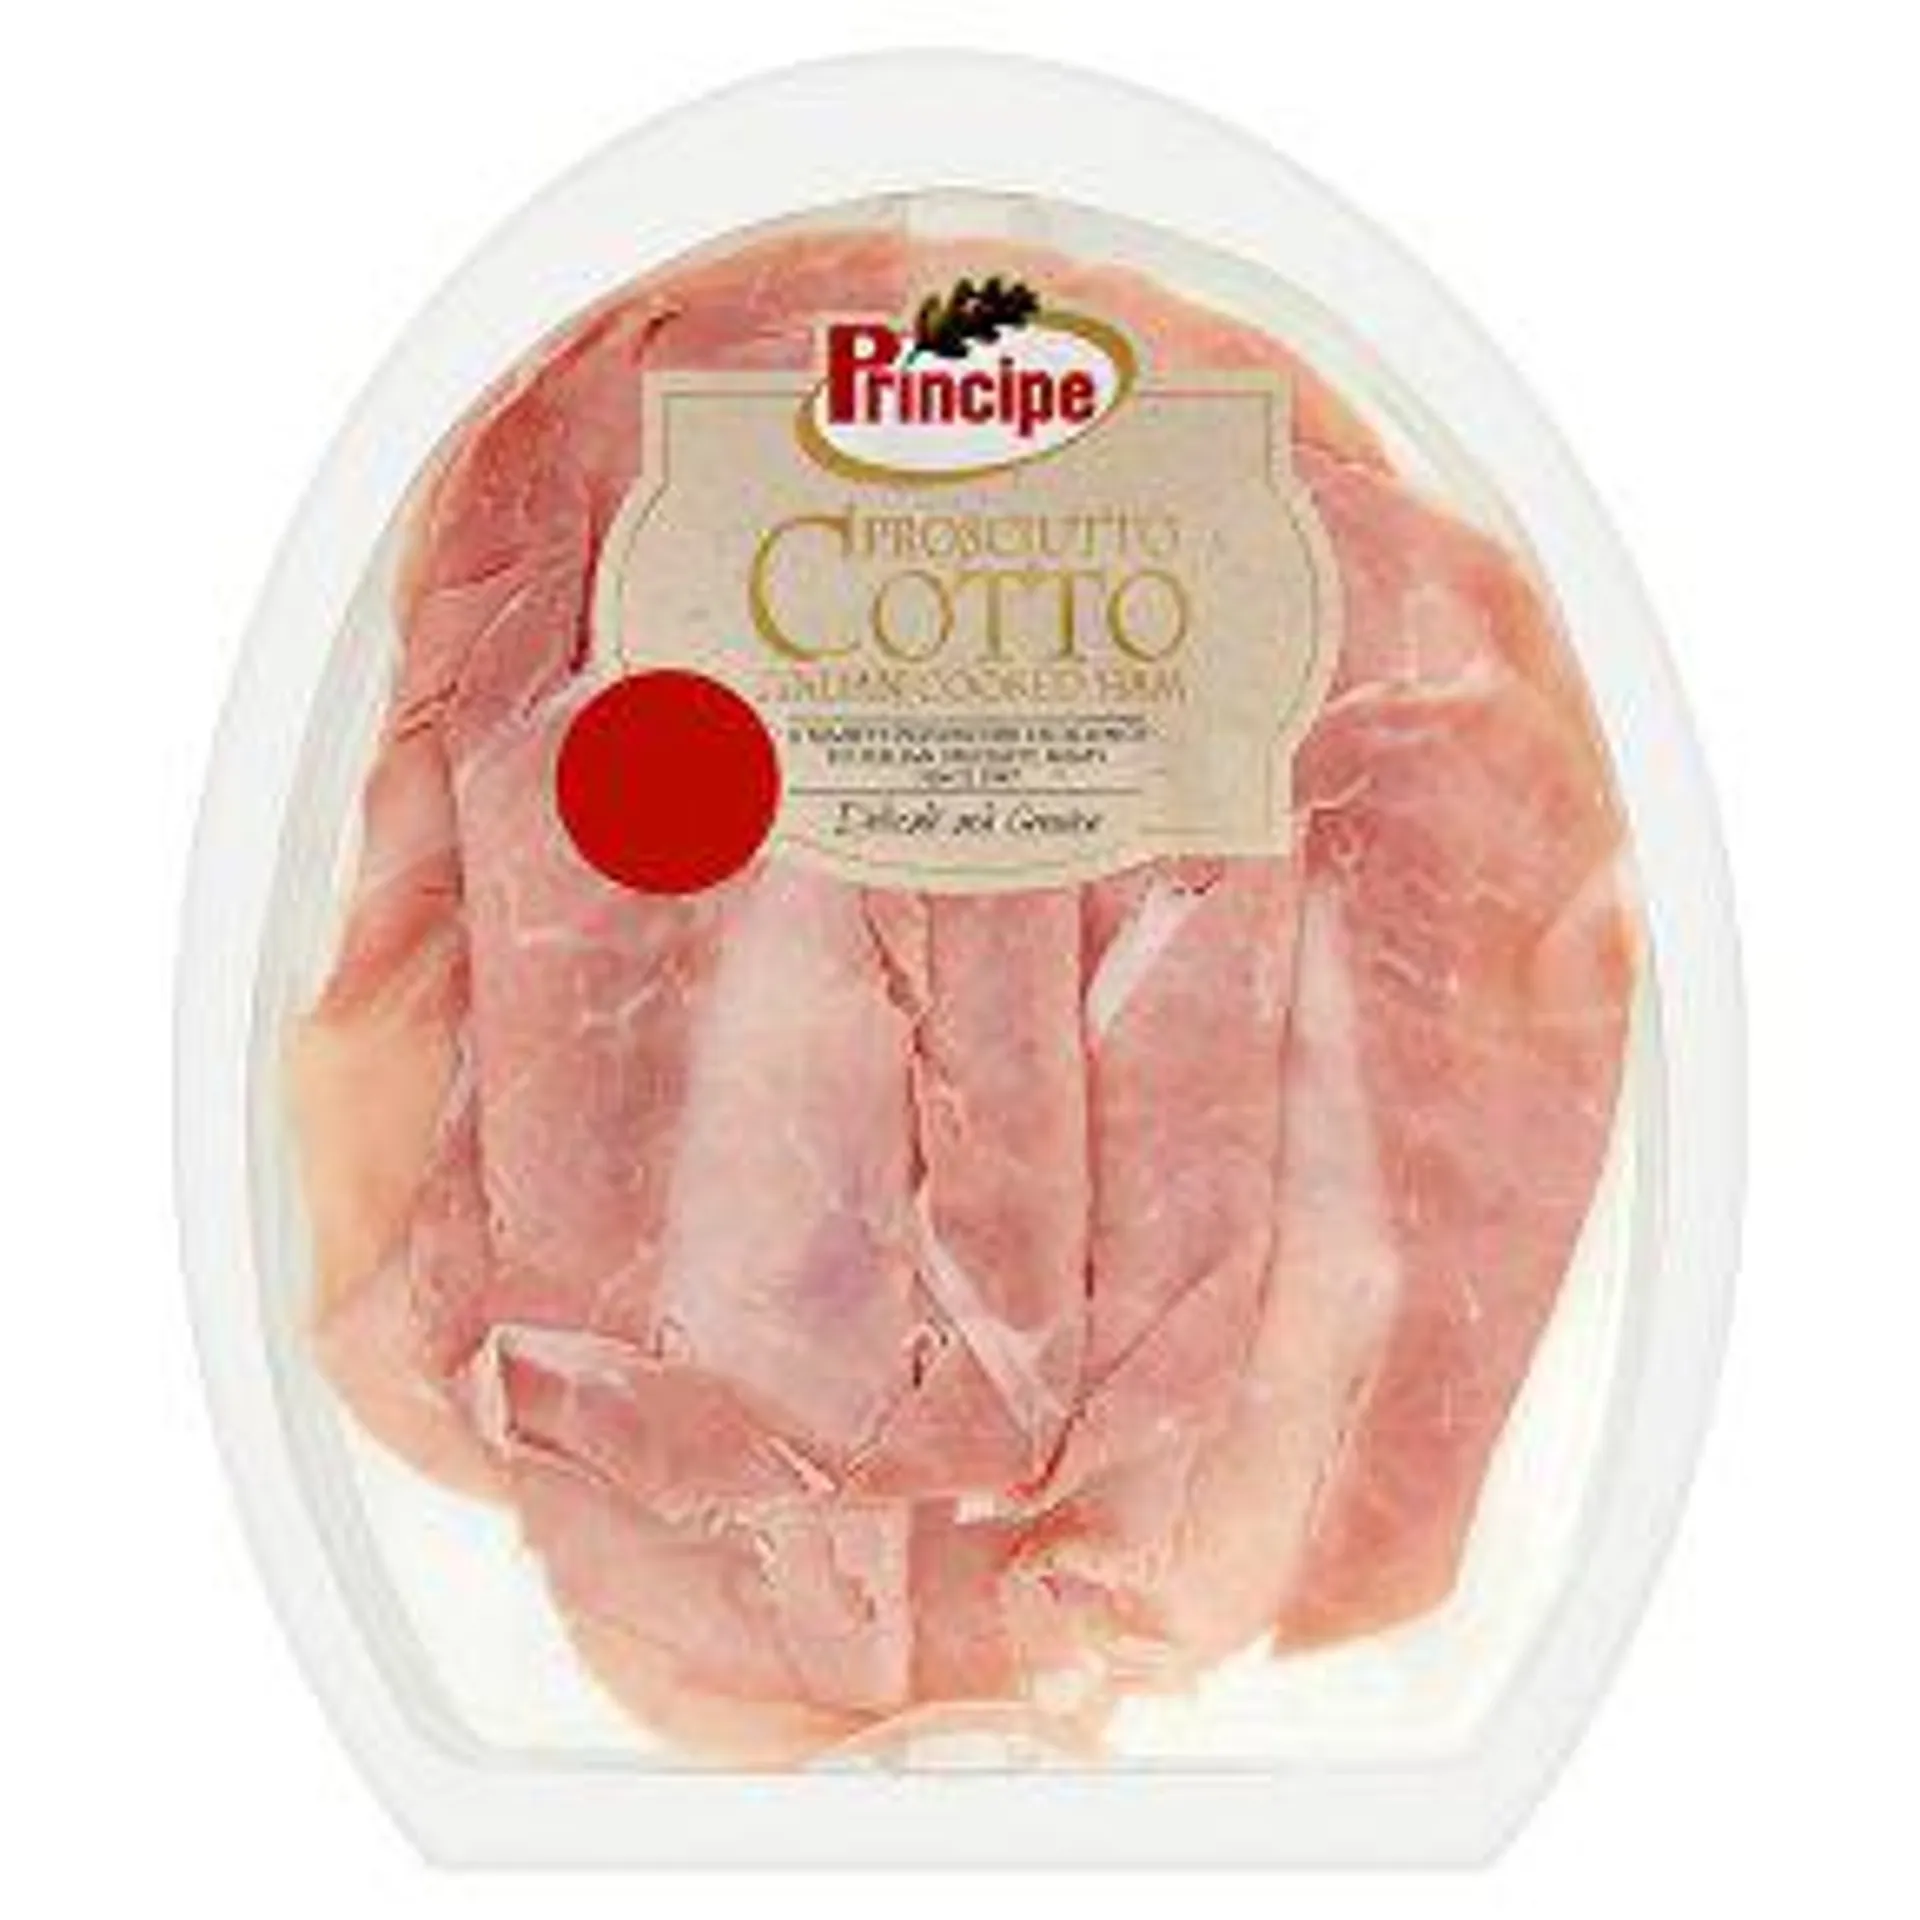 Principe Prosciutto Cotto Italian Cooked Ham